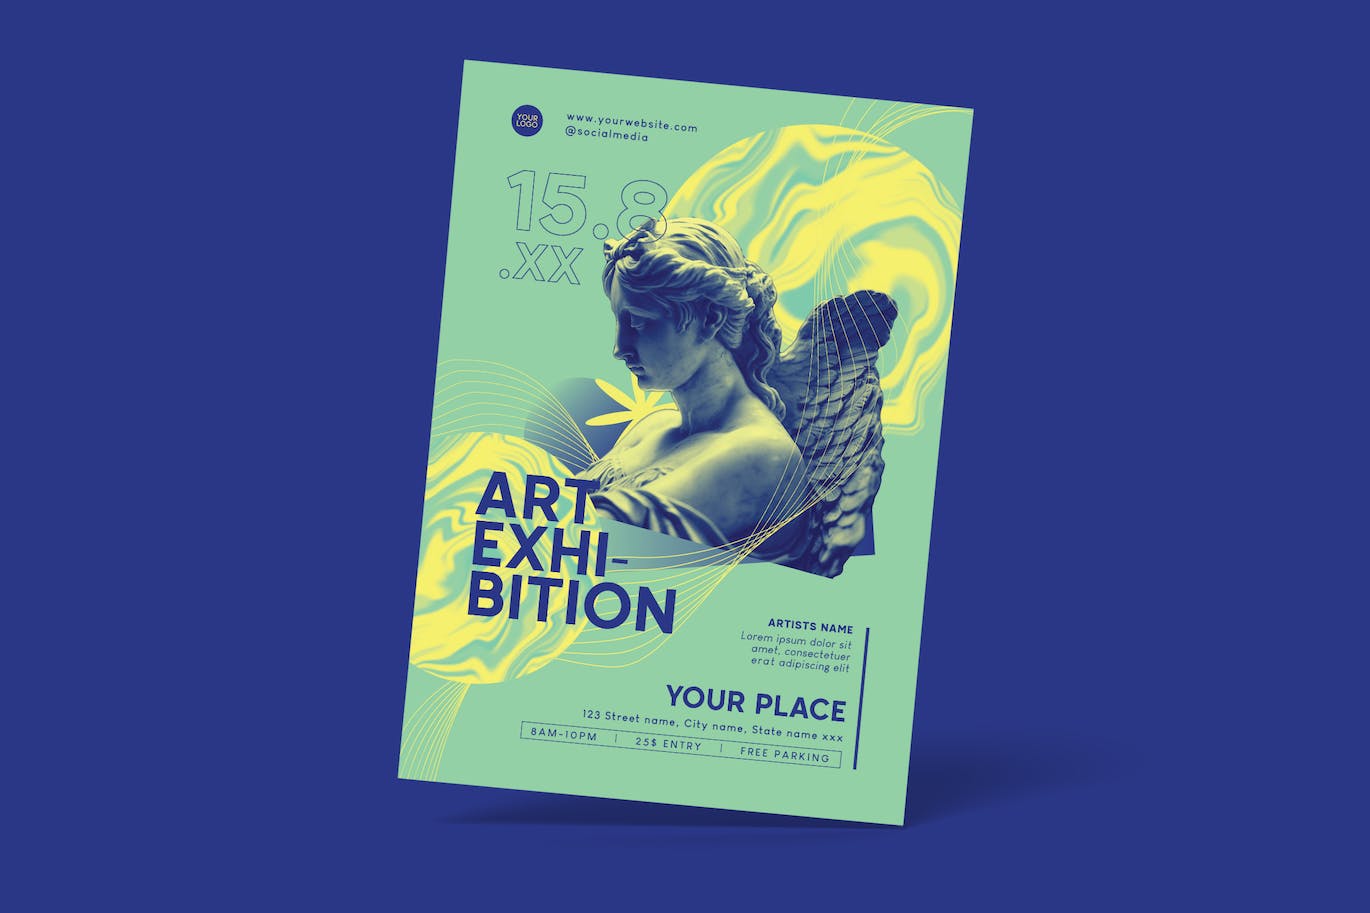 艺术展传单设计模板 Art Exhibition Flyer